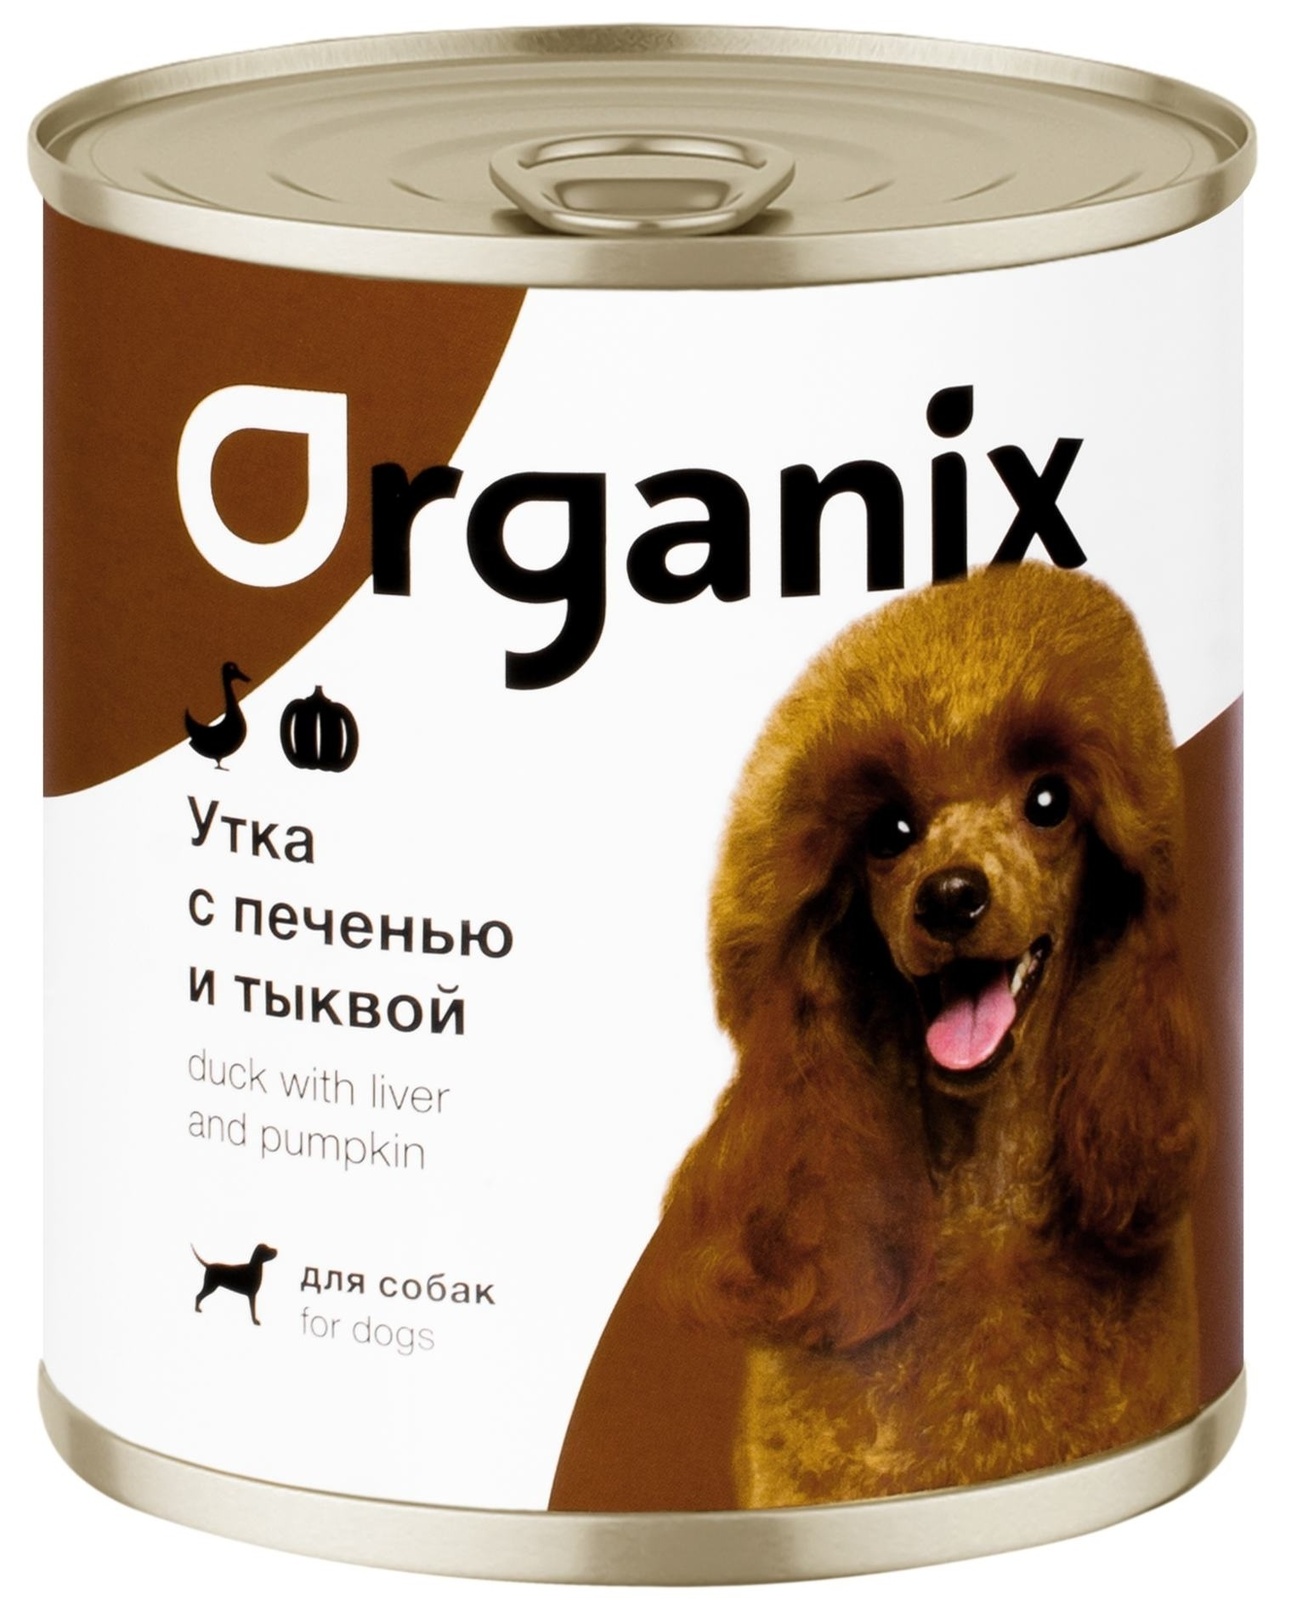 Organix консервы Organix консервы для собак Сочная утка с печенью и тыквой (100 г) organix консервы organix консервы для собак утка индейка картофель 100 г